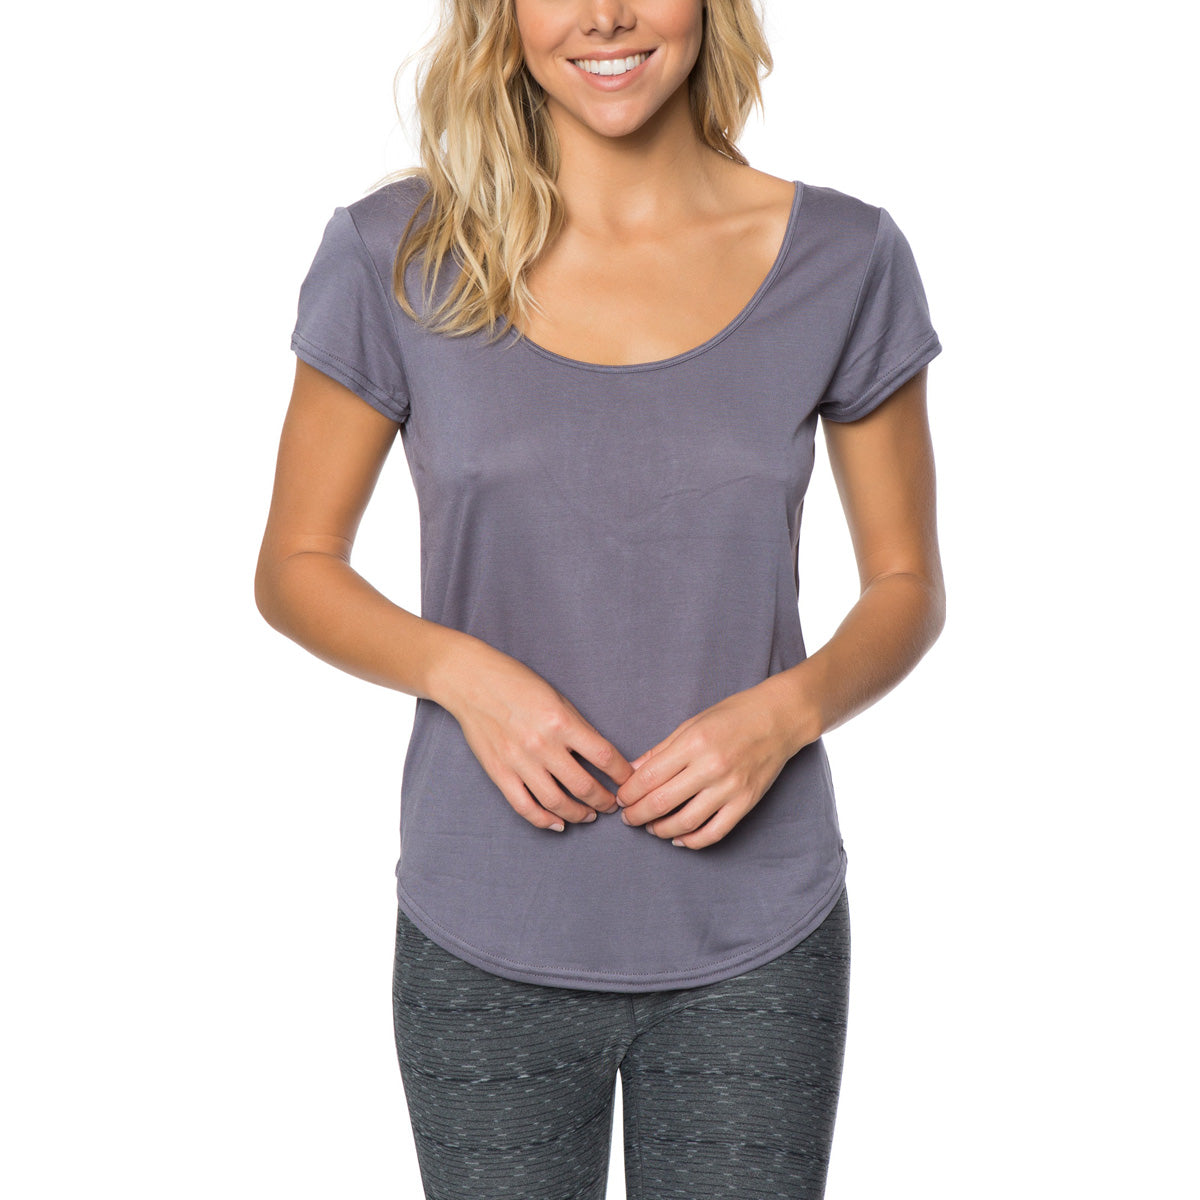 O'Neill Electrify Shirts Women's Top Shirts - Grey